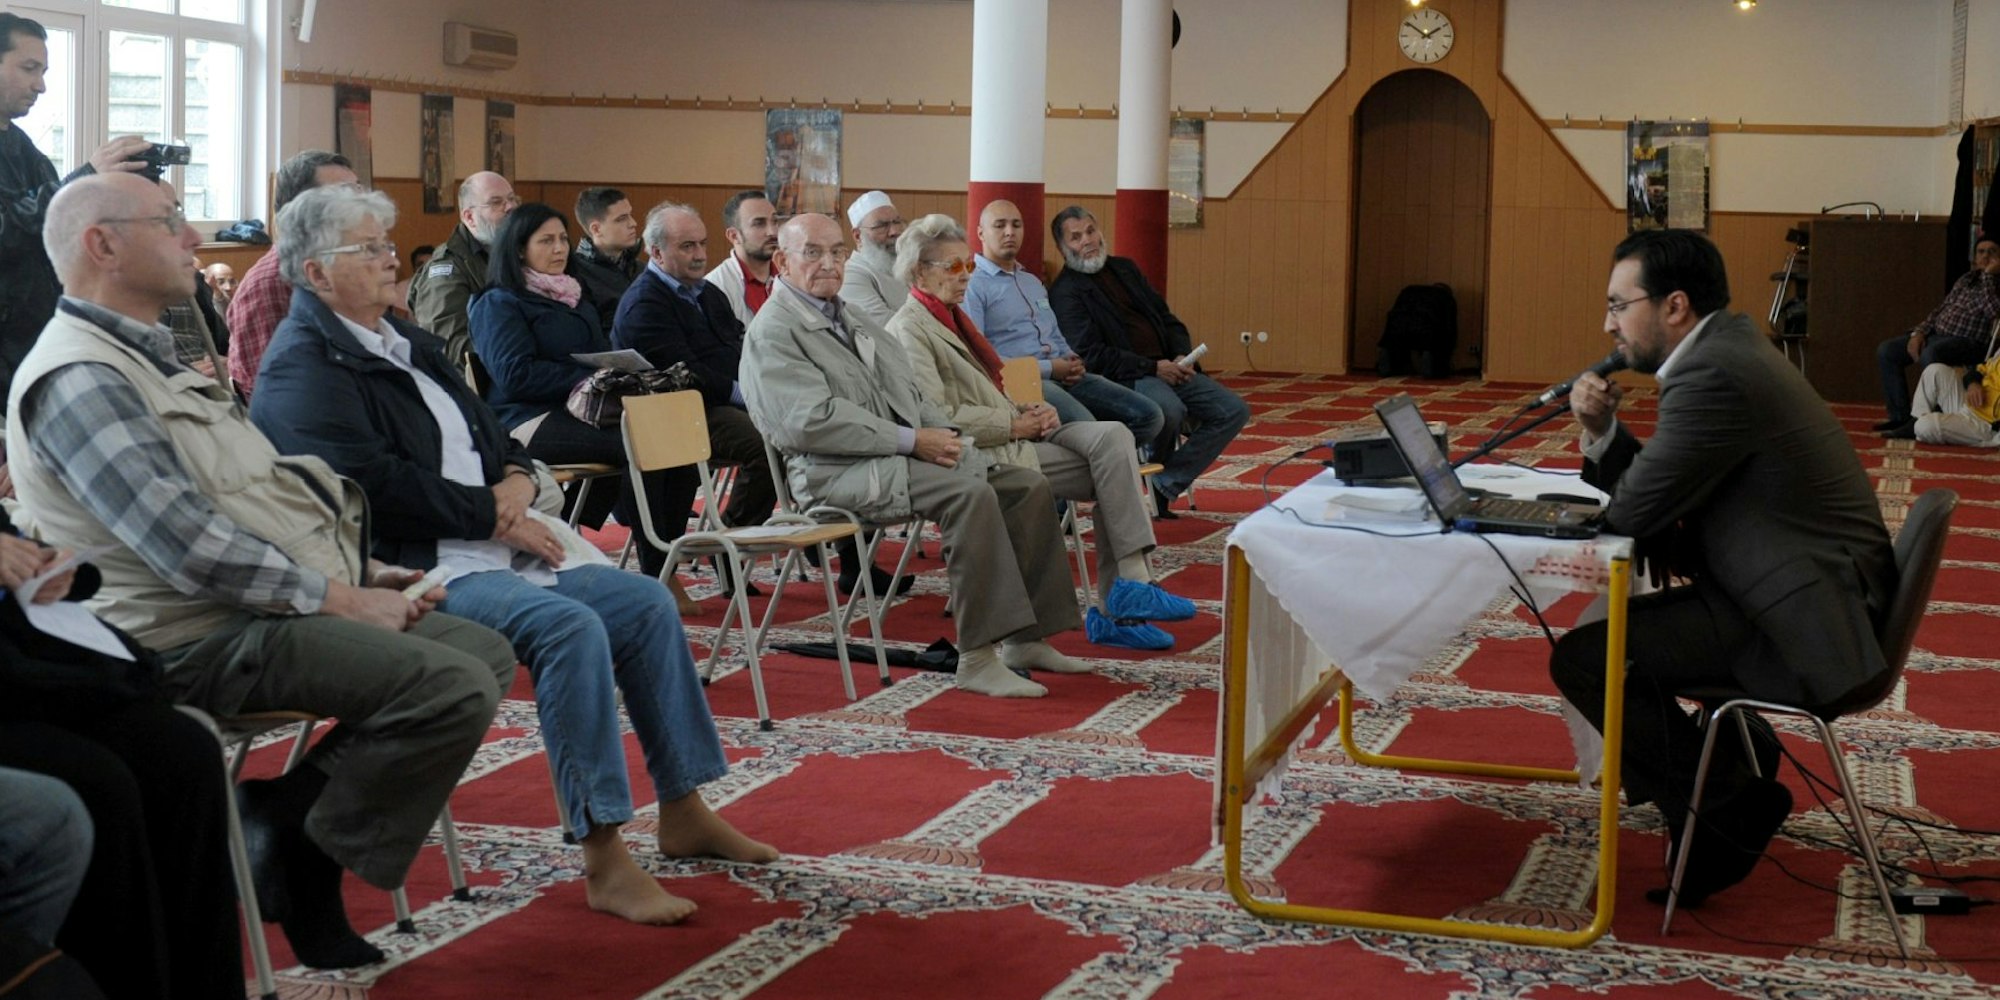 In der Abubakr Moschee am Höninger Weg konnten die Besucher etwa das Mittagsgebet beobachten oder an einer Koranlesung teilnehmen.